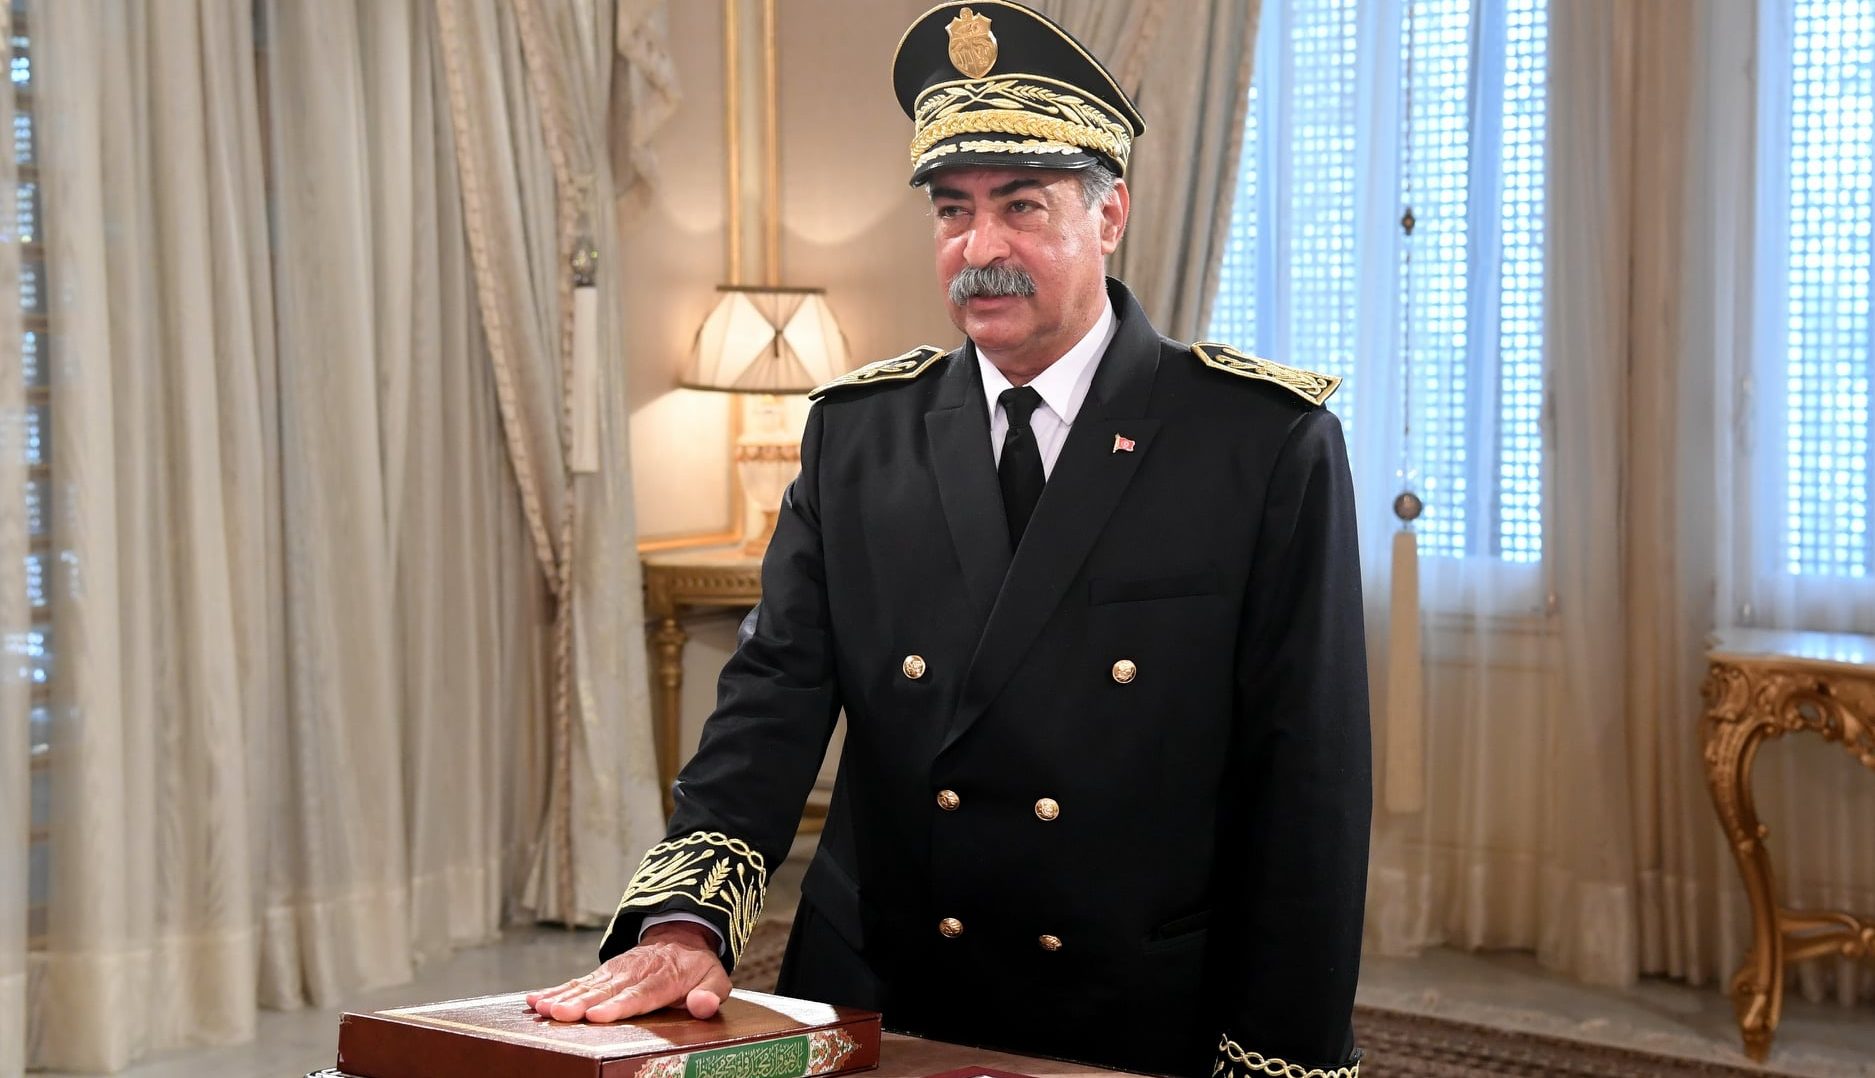 تعيين وزير جديد للداخلية فتونس بعد استقالة الوزير السابق توفيق شرف الدين